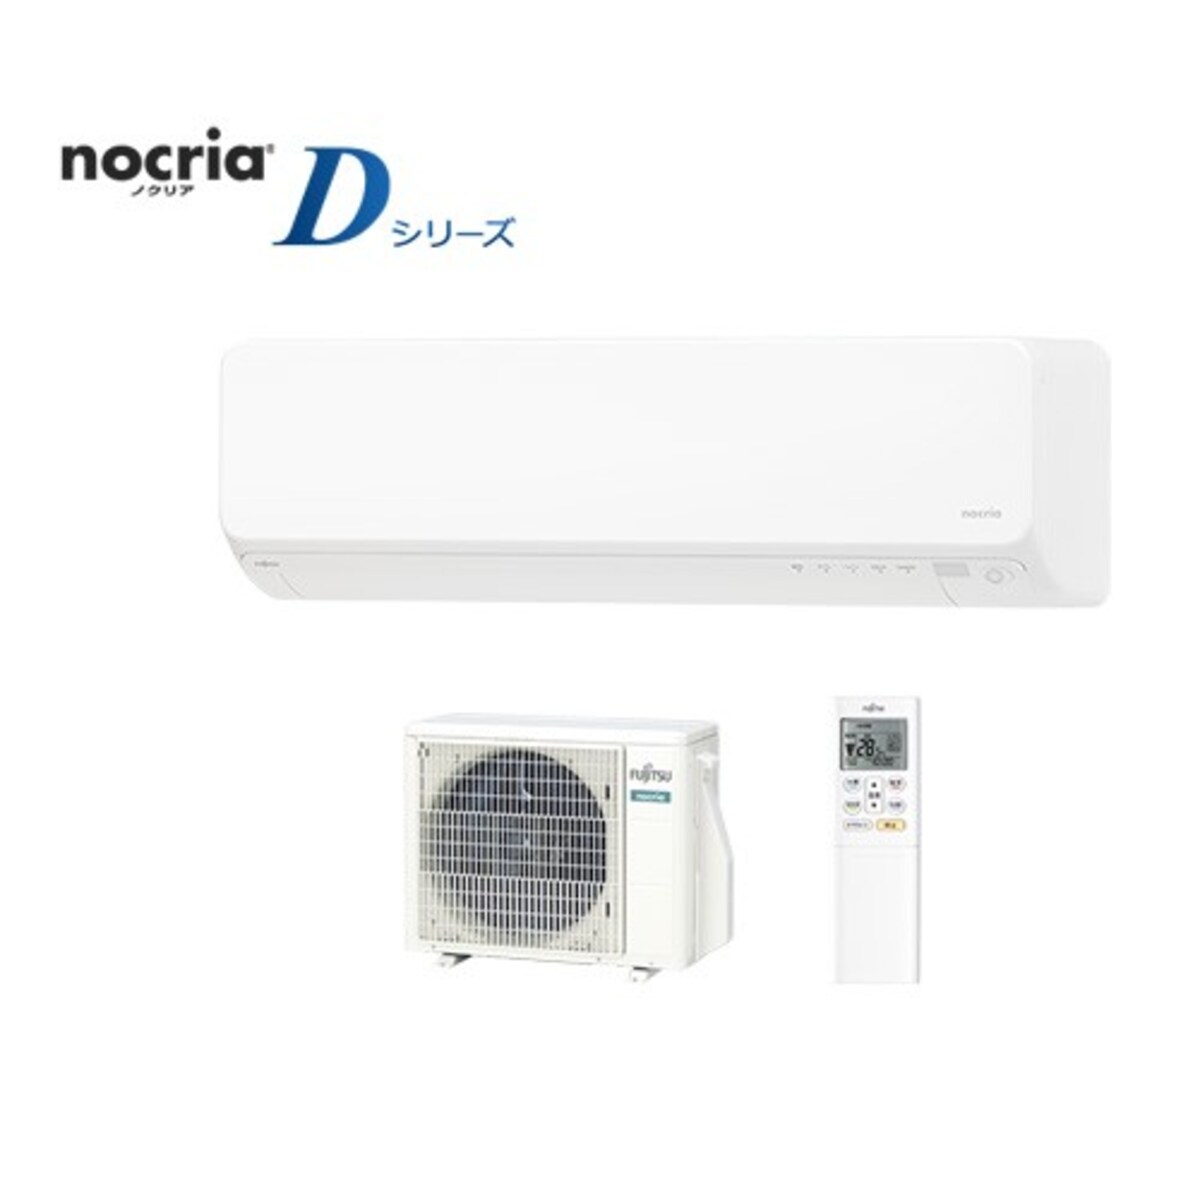 nocria Dシリーズ【2021モデル】